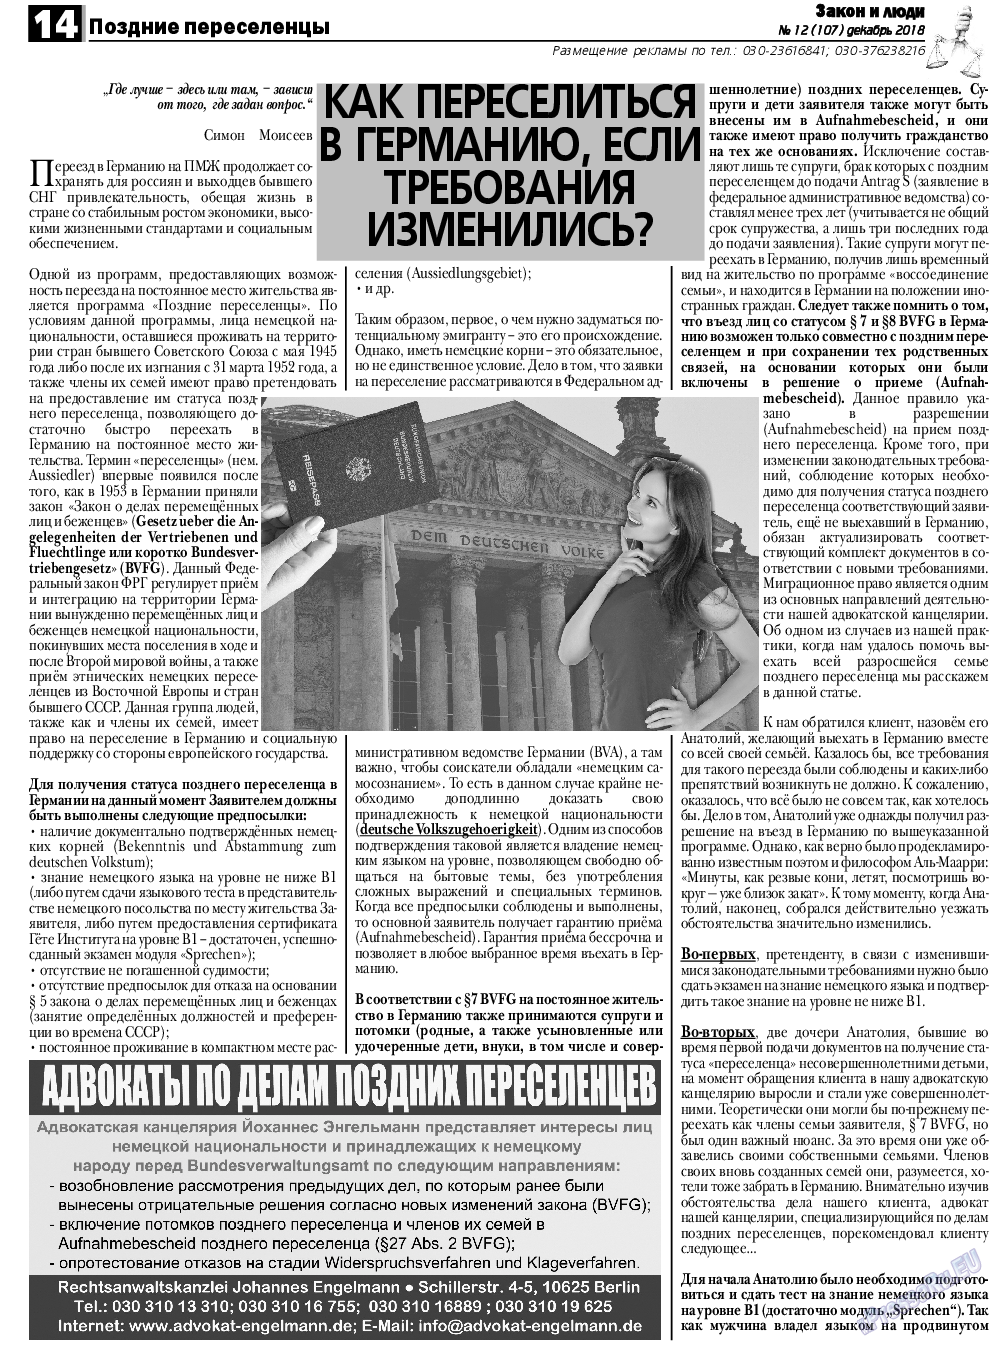 Закон и люди, газета. 2018 №12 стр.14